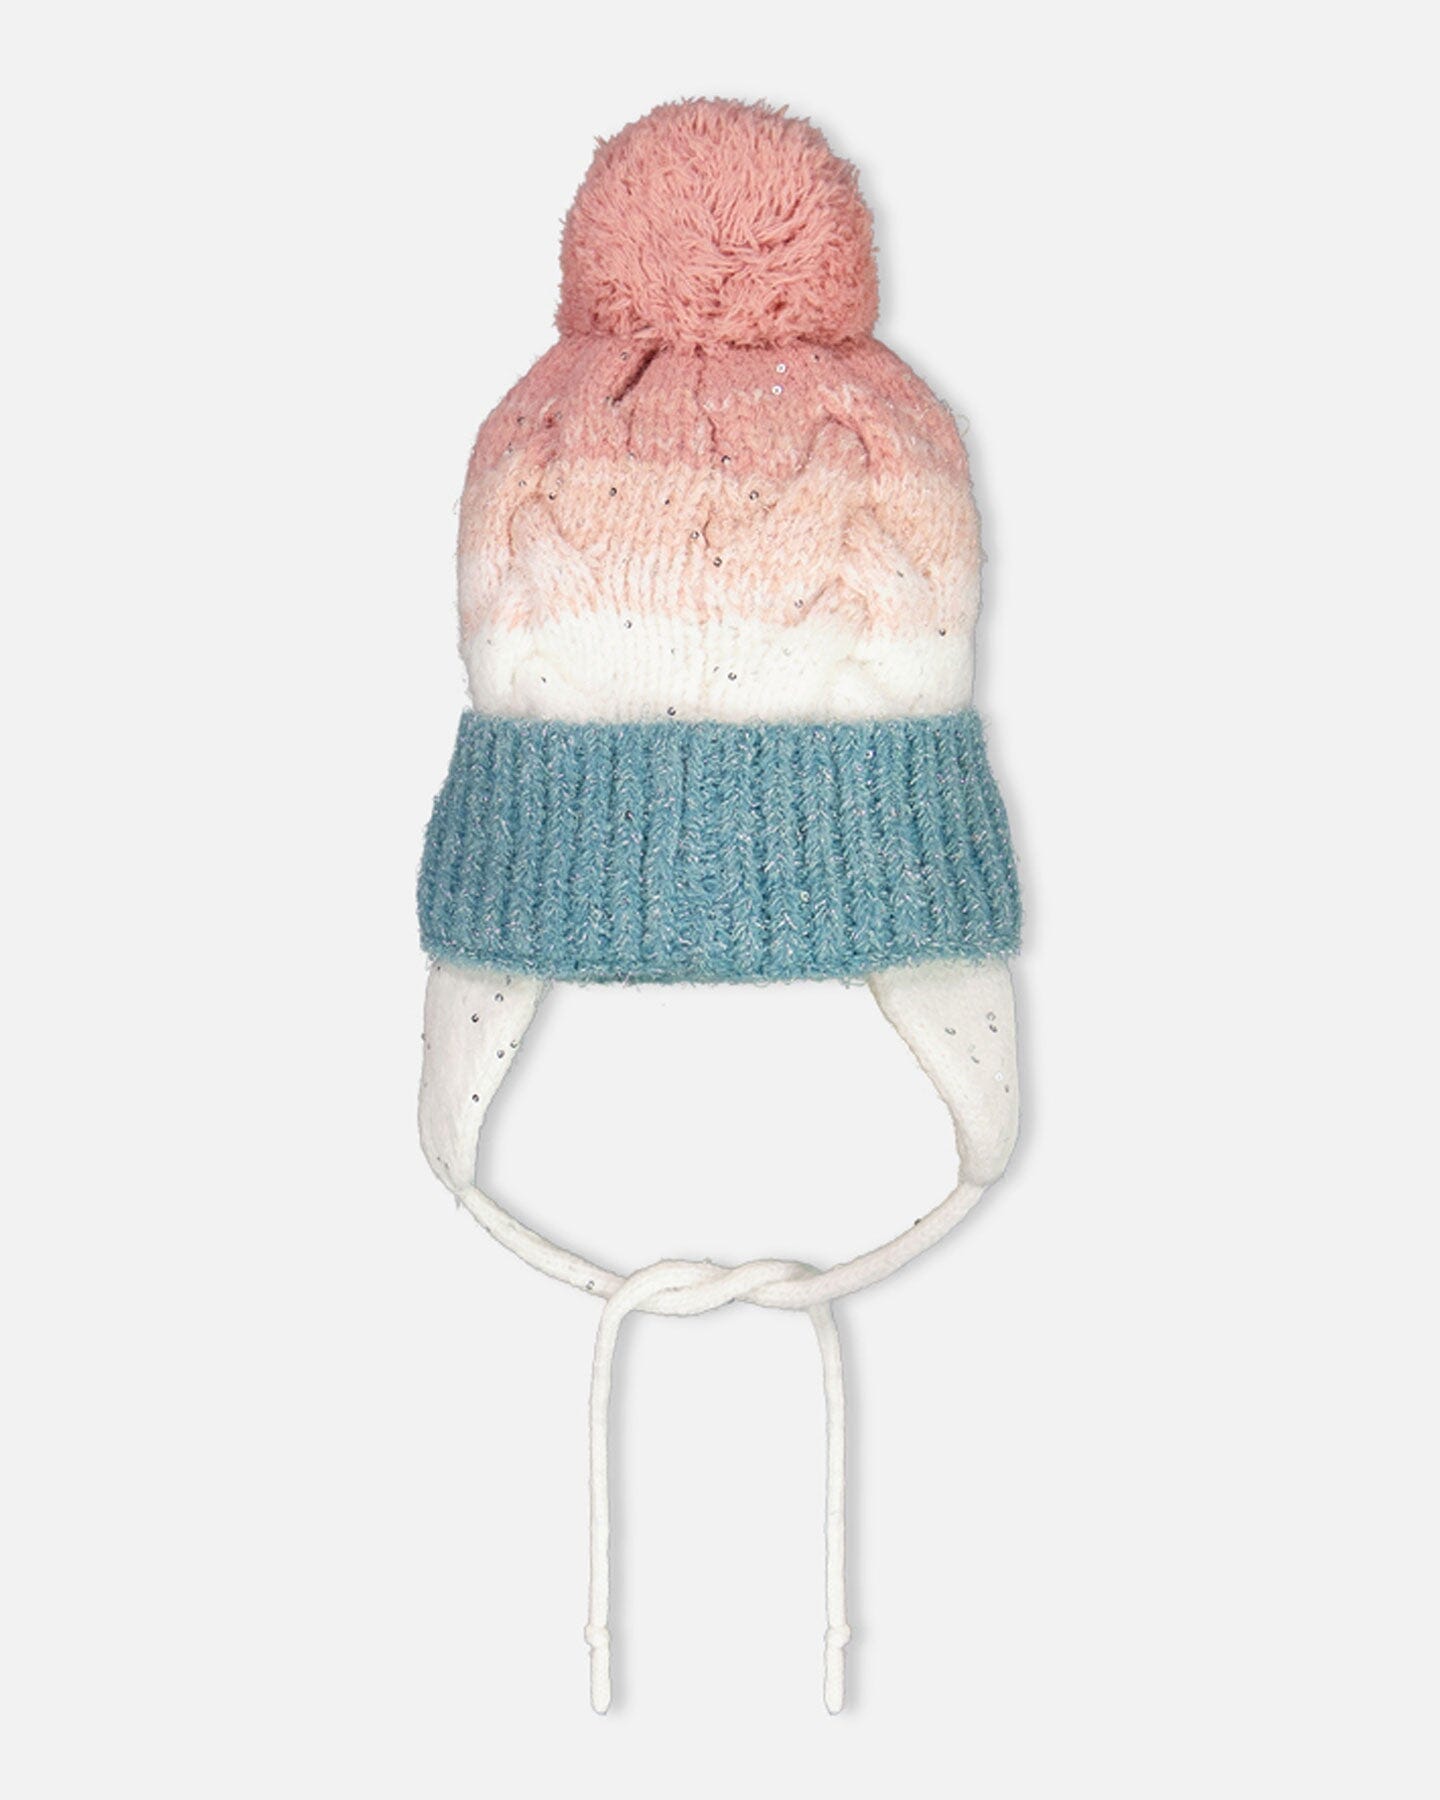 Pompom Knit Earflap Hat Pink And Blue Gradient Winter Accessories Deux par Deux 